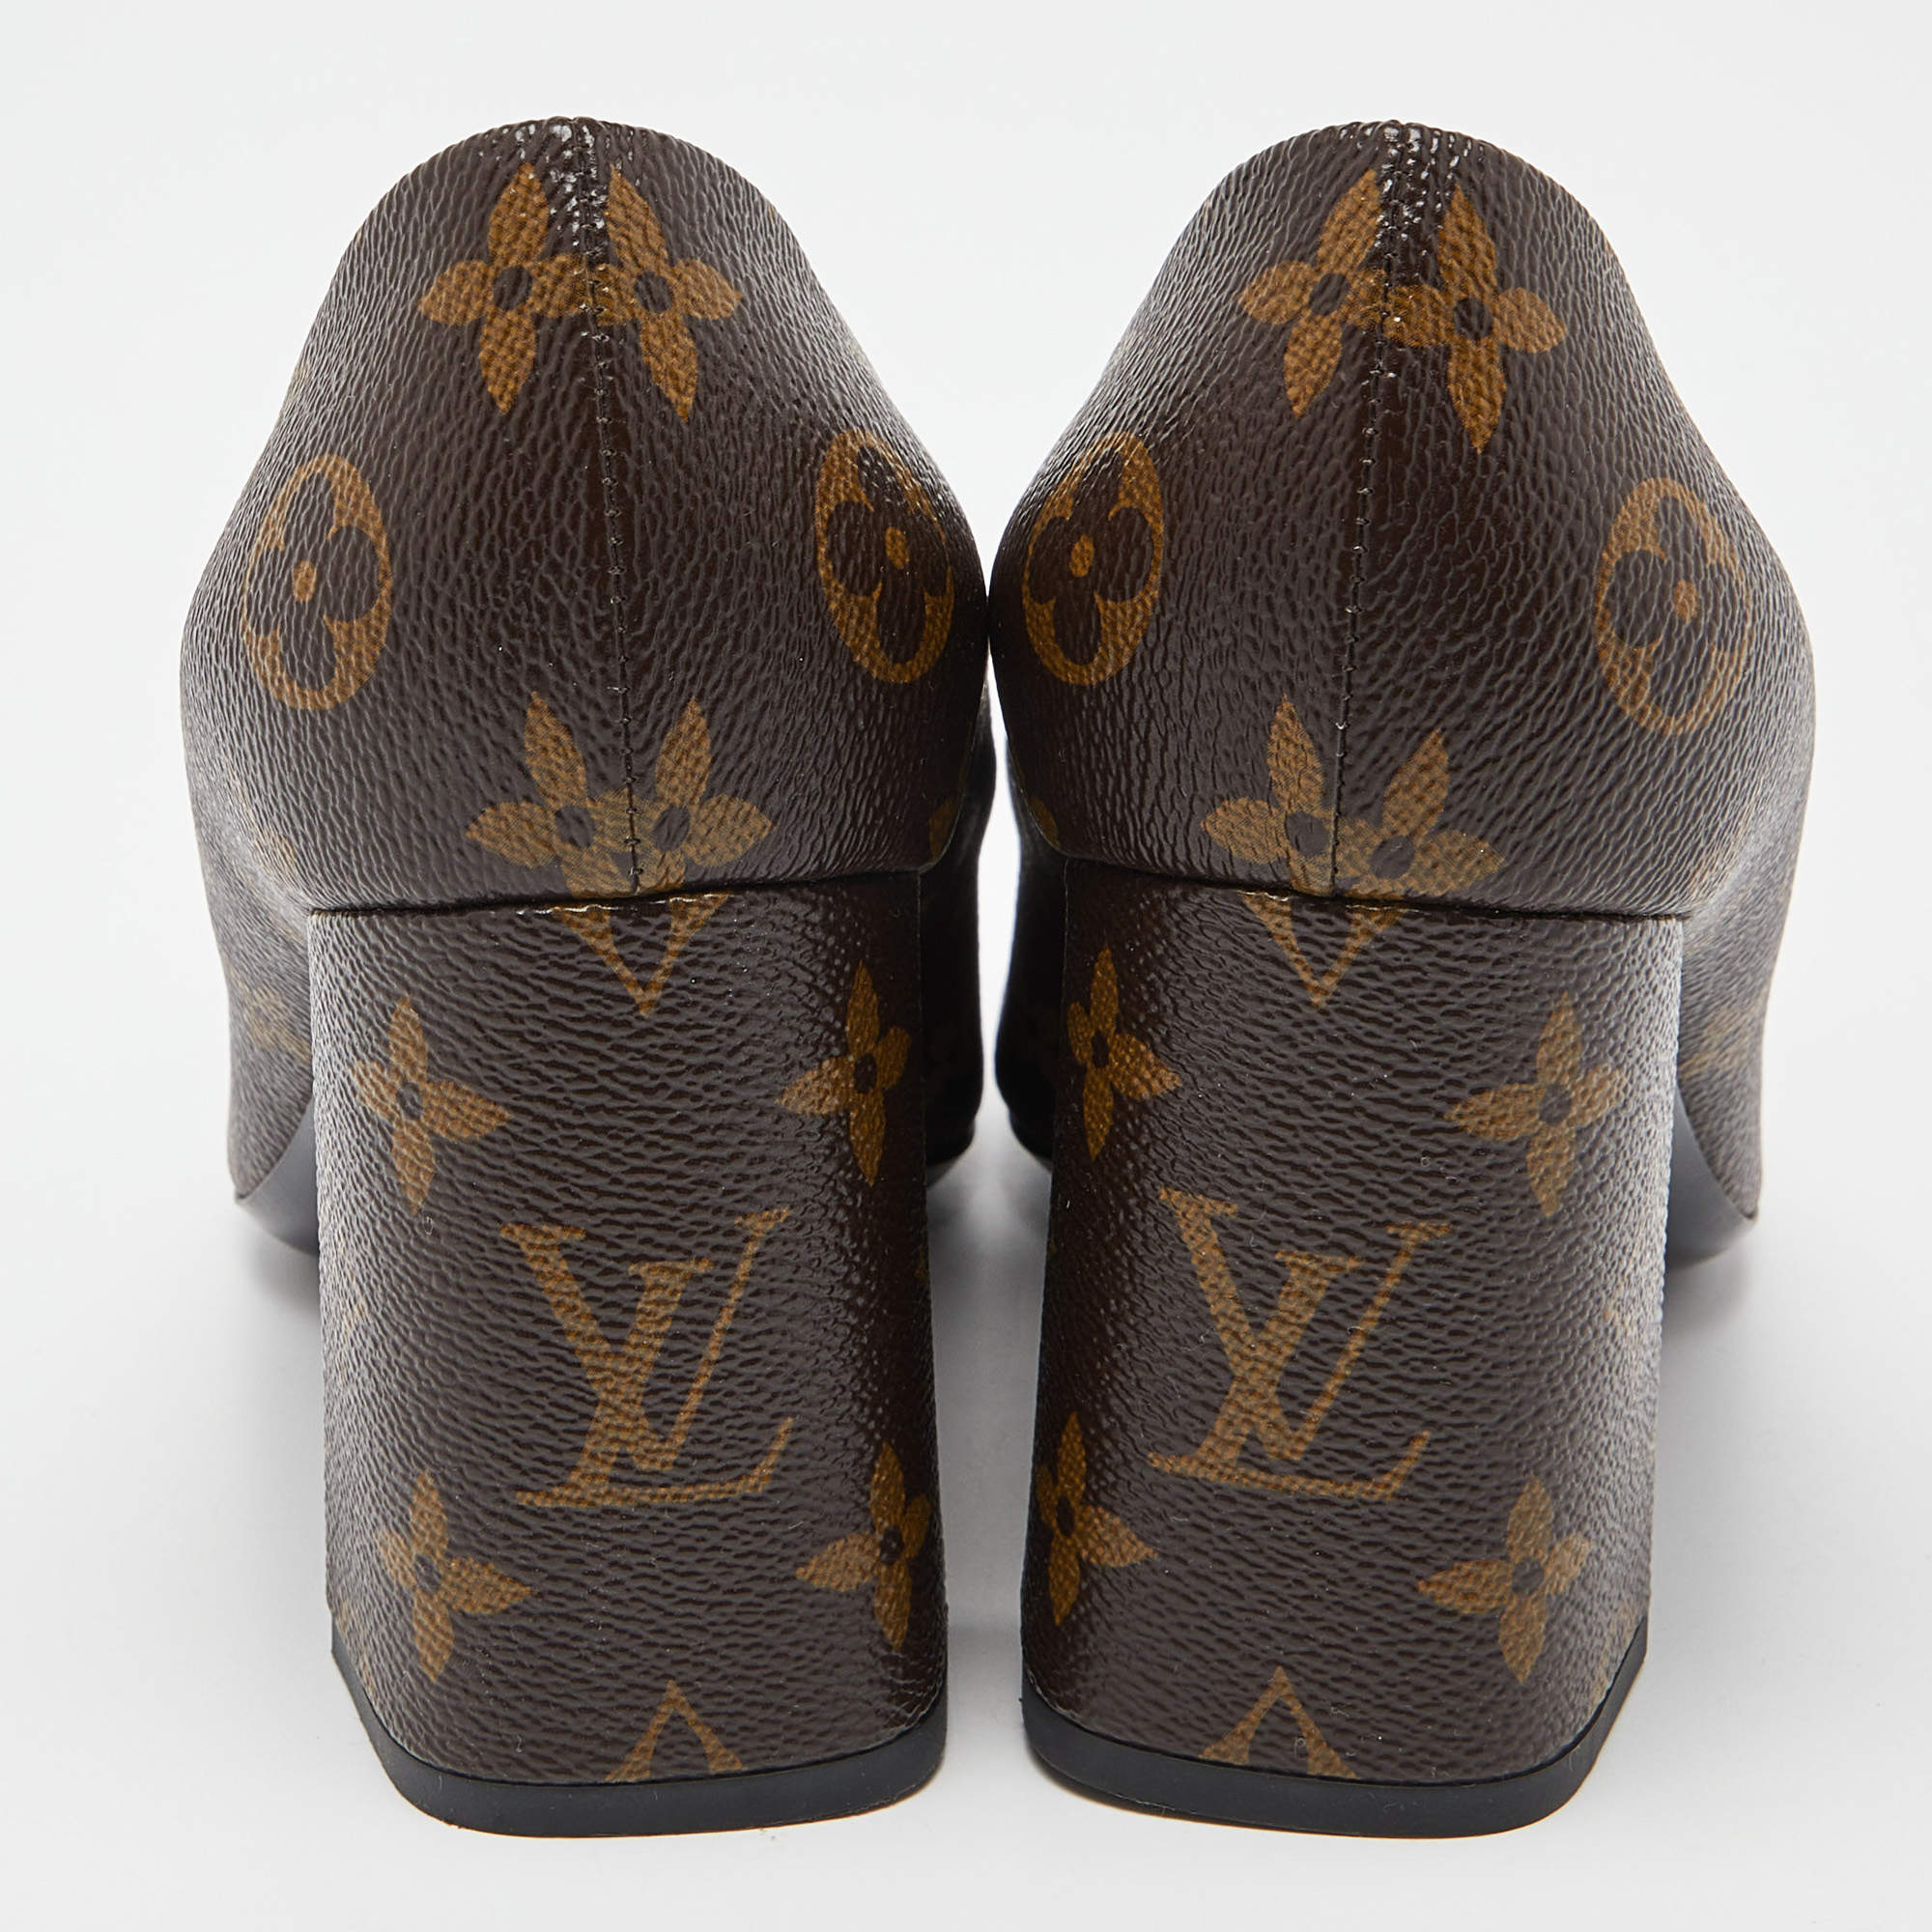 Louis Vuitton Monogram Canvas Madeleine Block Heel Pumps Size 38.5